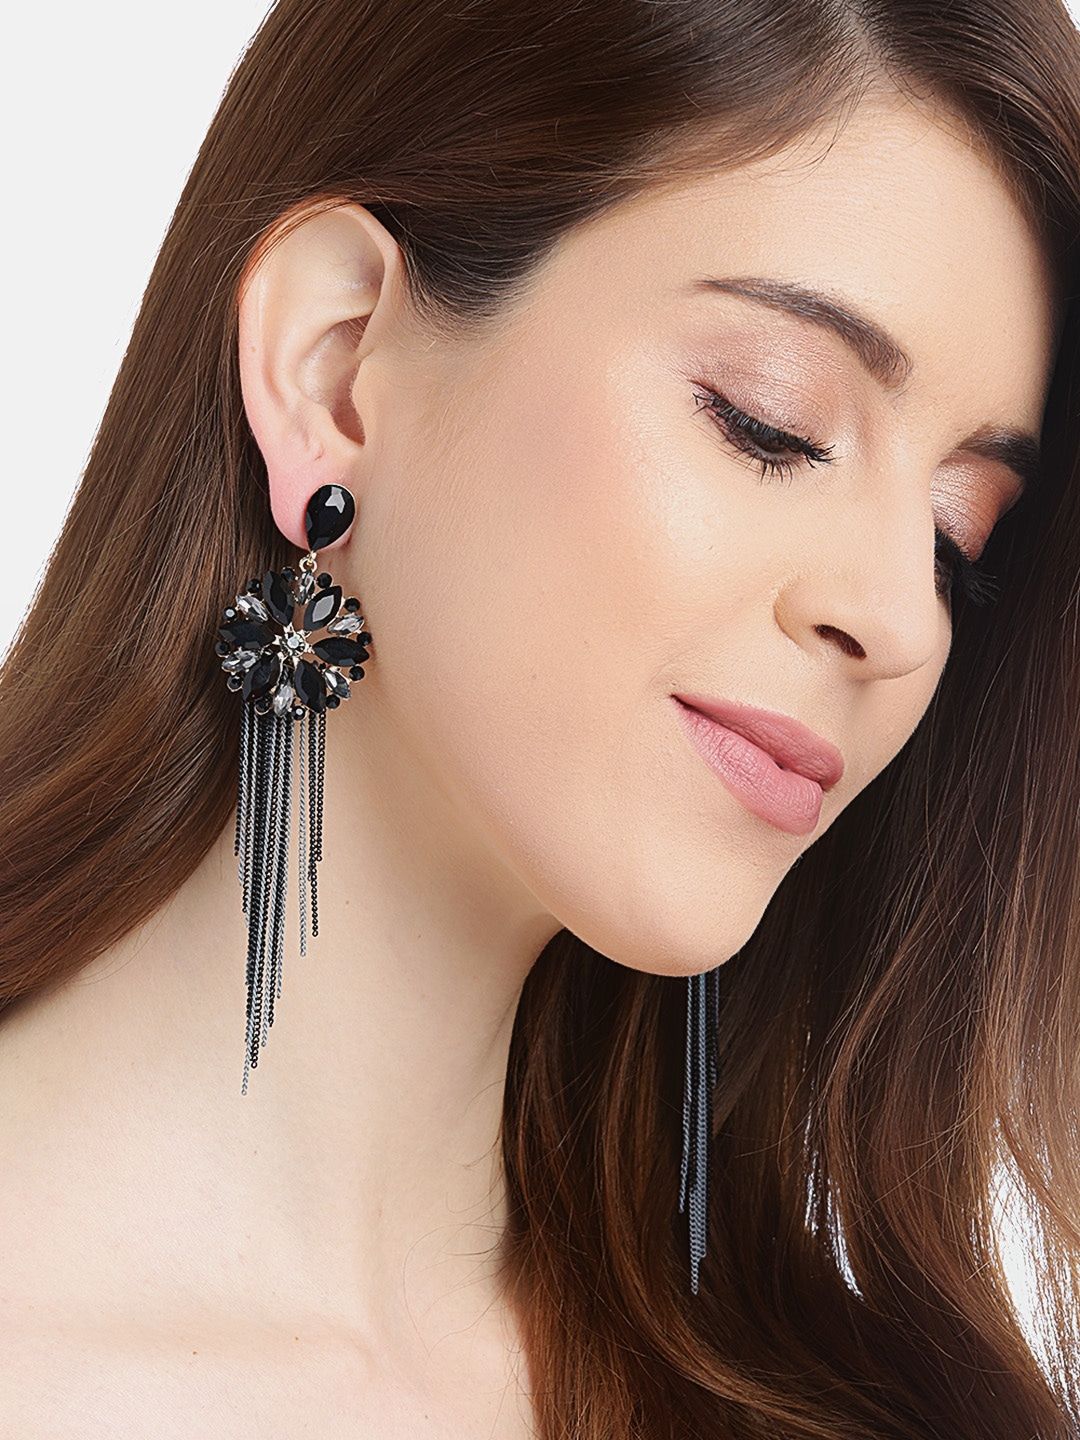 LEEKER Mix Style Grey Stone Metal Tassels Earrings For Women Fashion  Jewelry Long Earring wedding accessories166